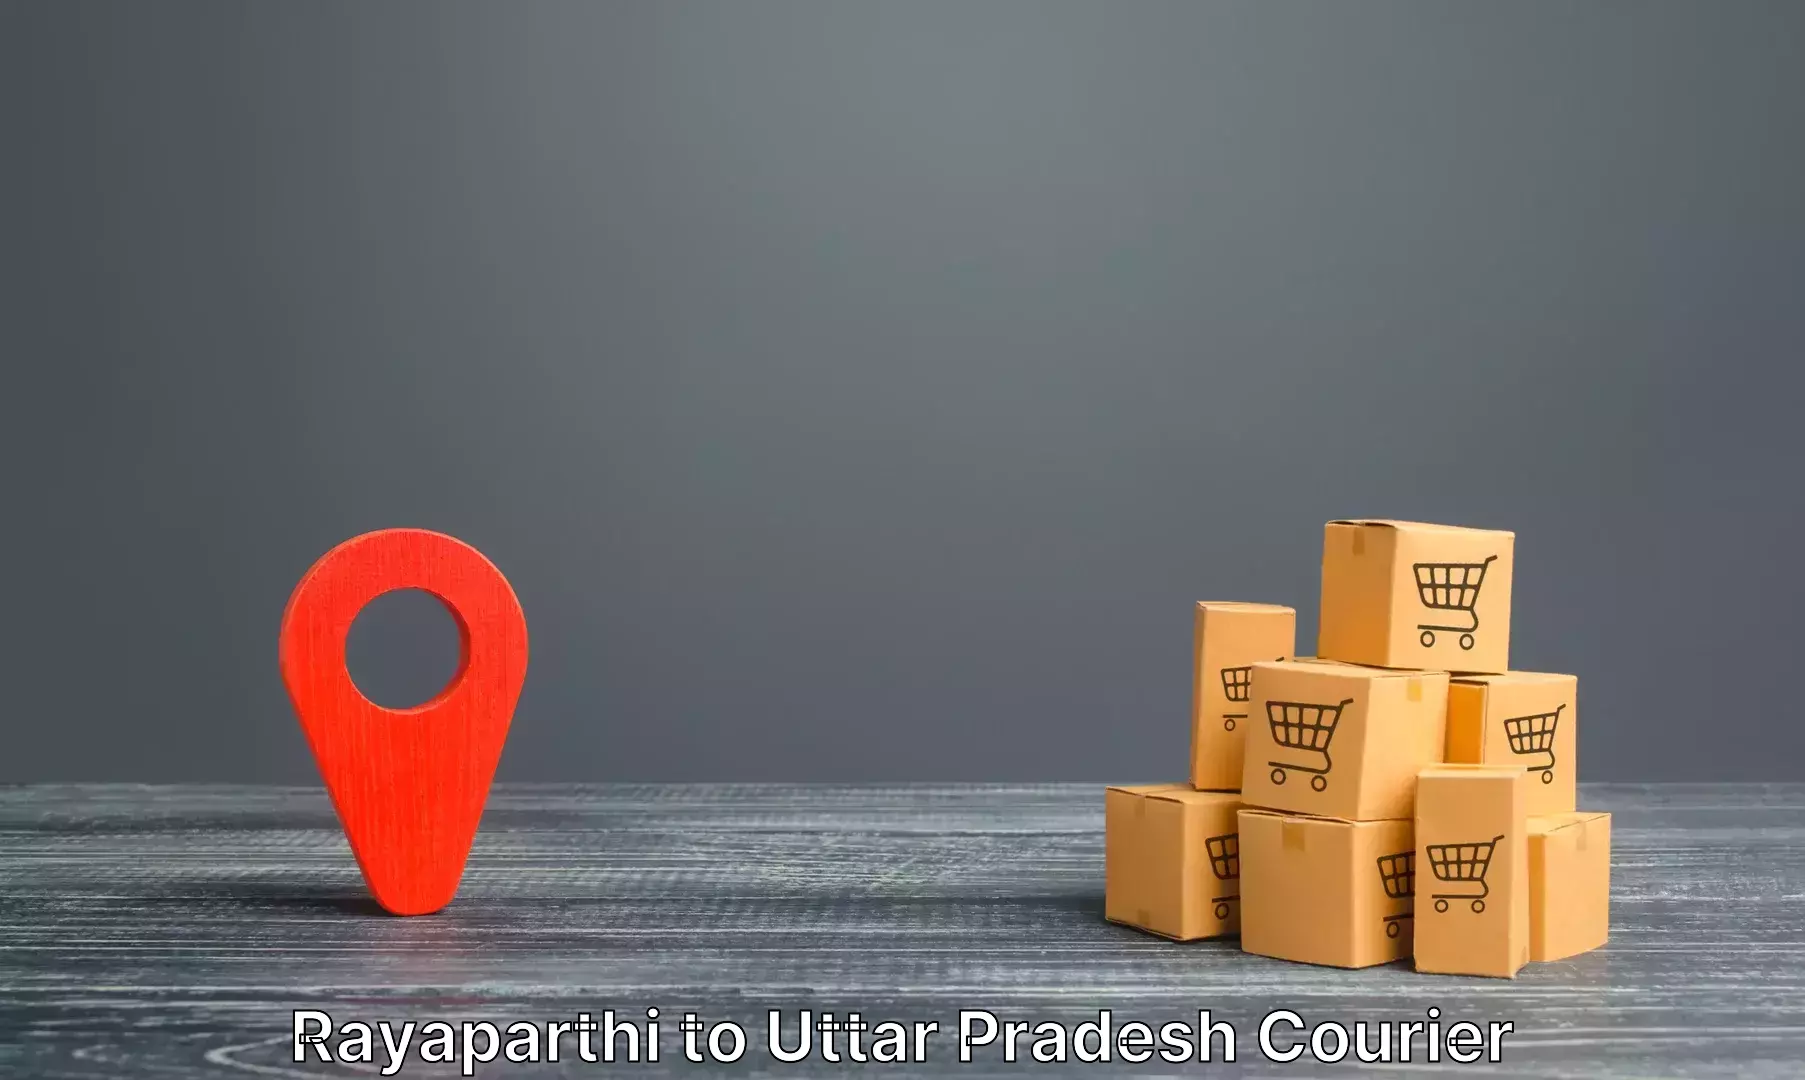 Automated luggage transport Rayaparthi to Uttar Pradesh